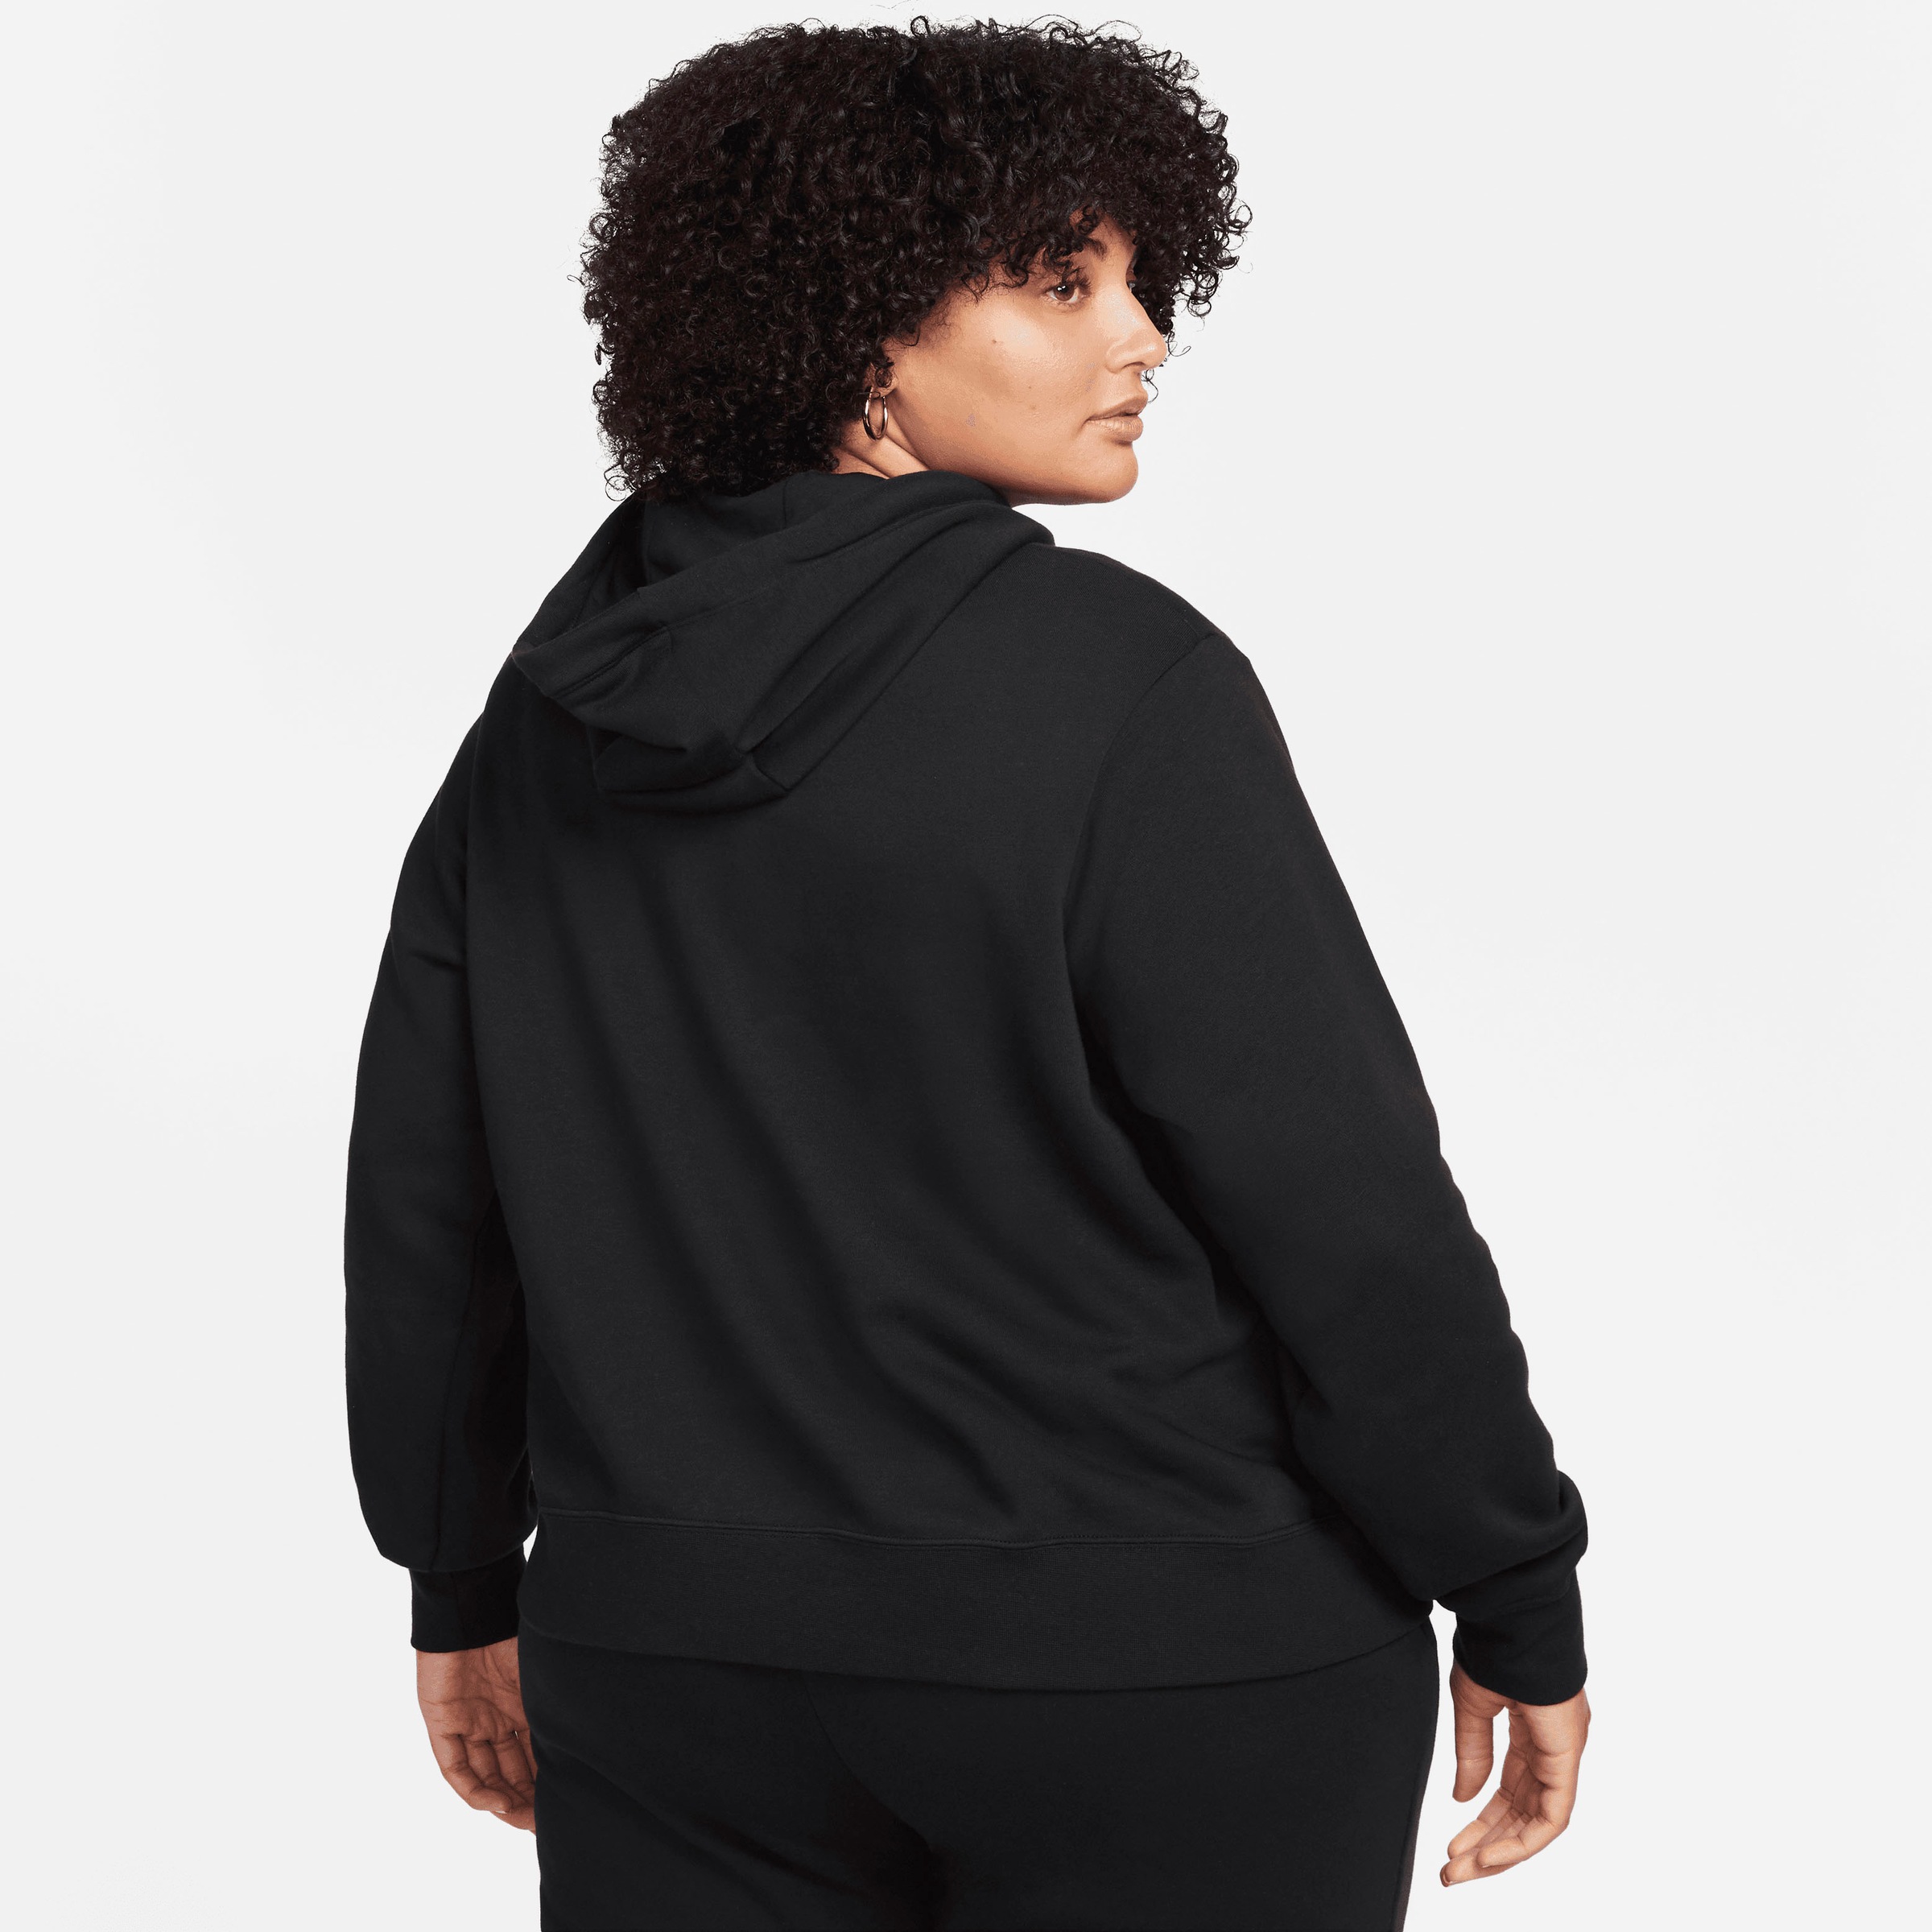 Nike Sportswear Kapuzensweatshirt »Club Fleece Women's Pullover Hoodie (Plus Size)«